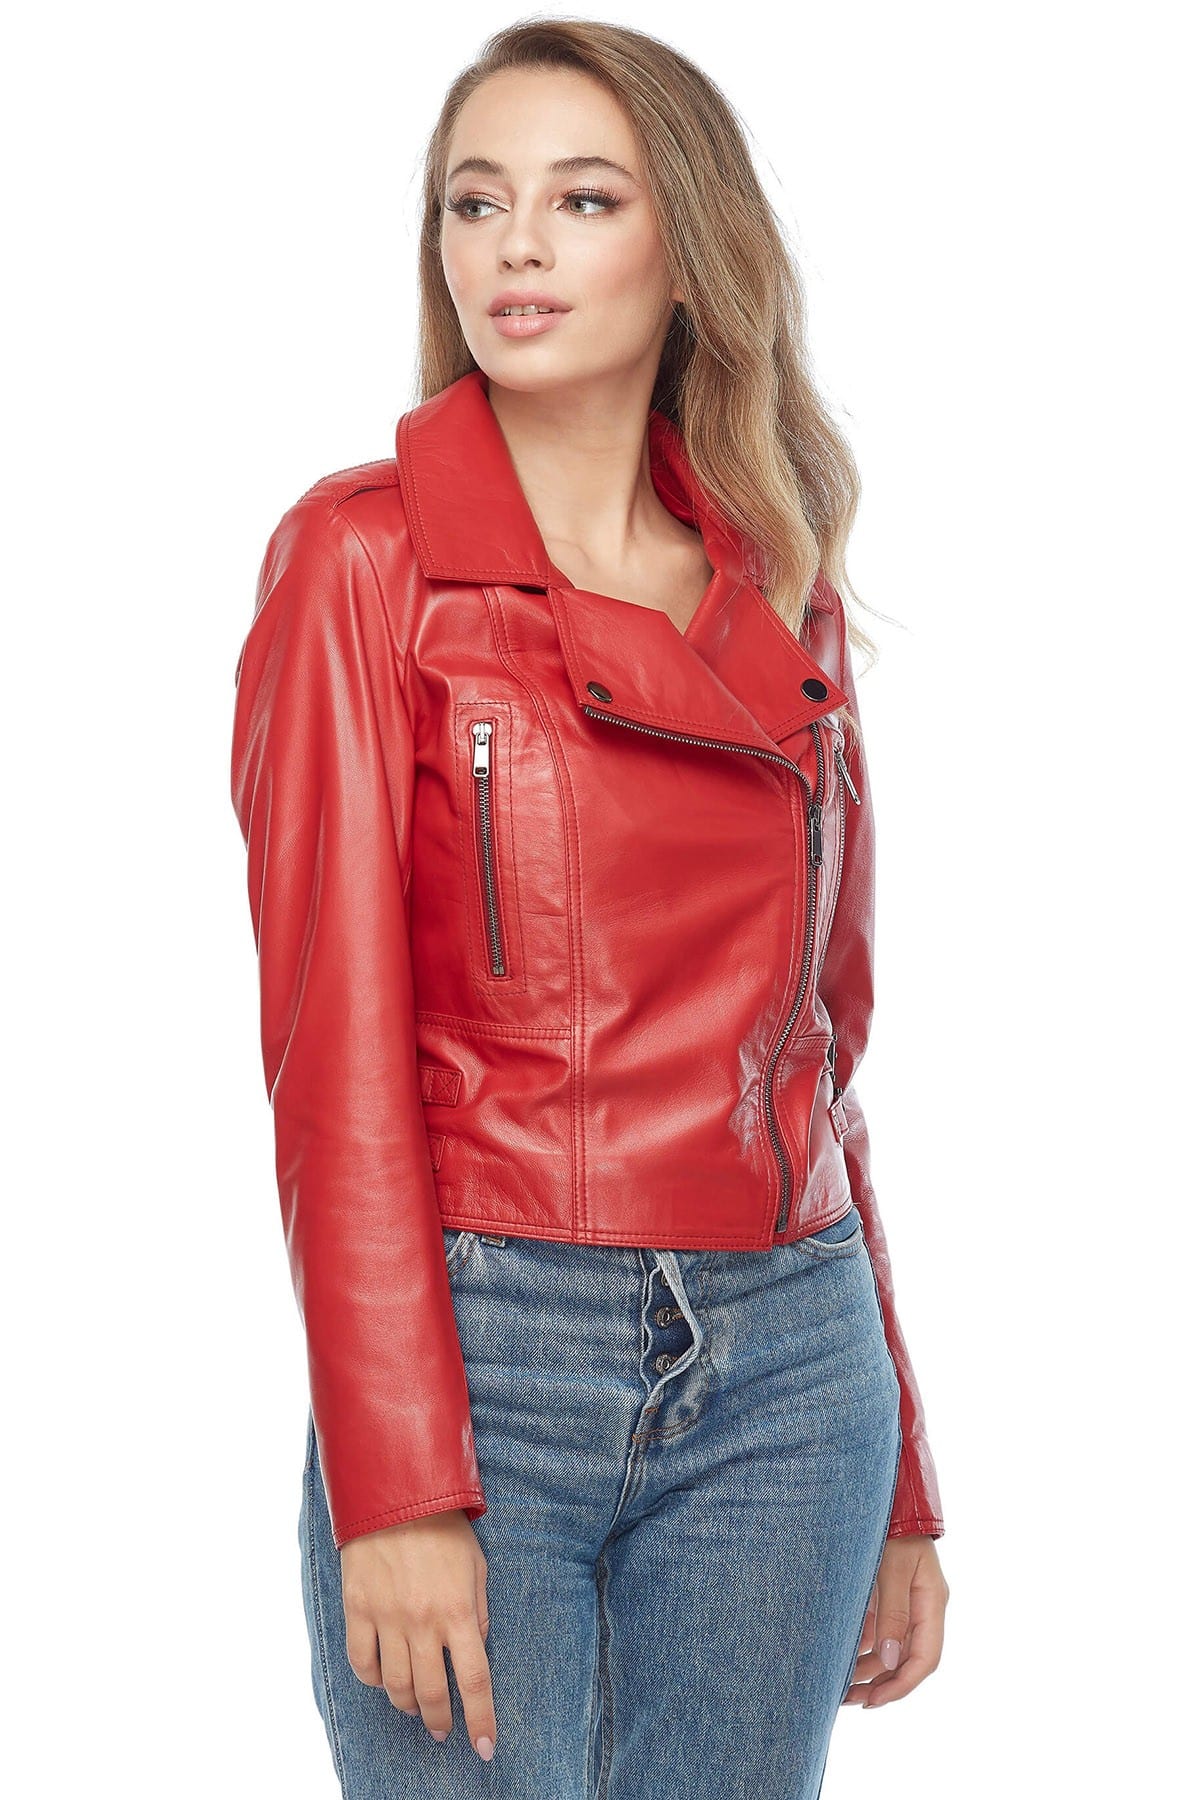 Chloe Ayling Genuine Leather Moto Jacket Red3